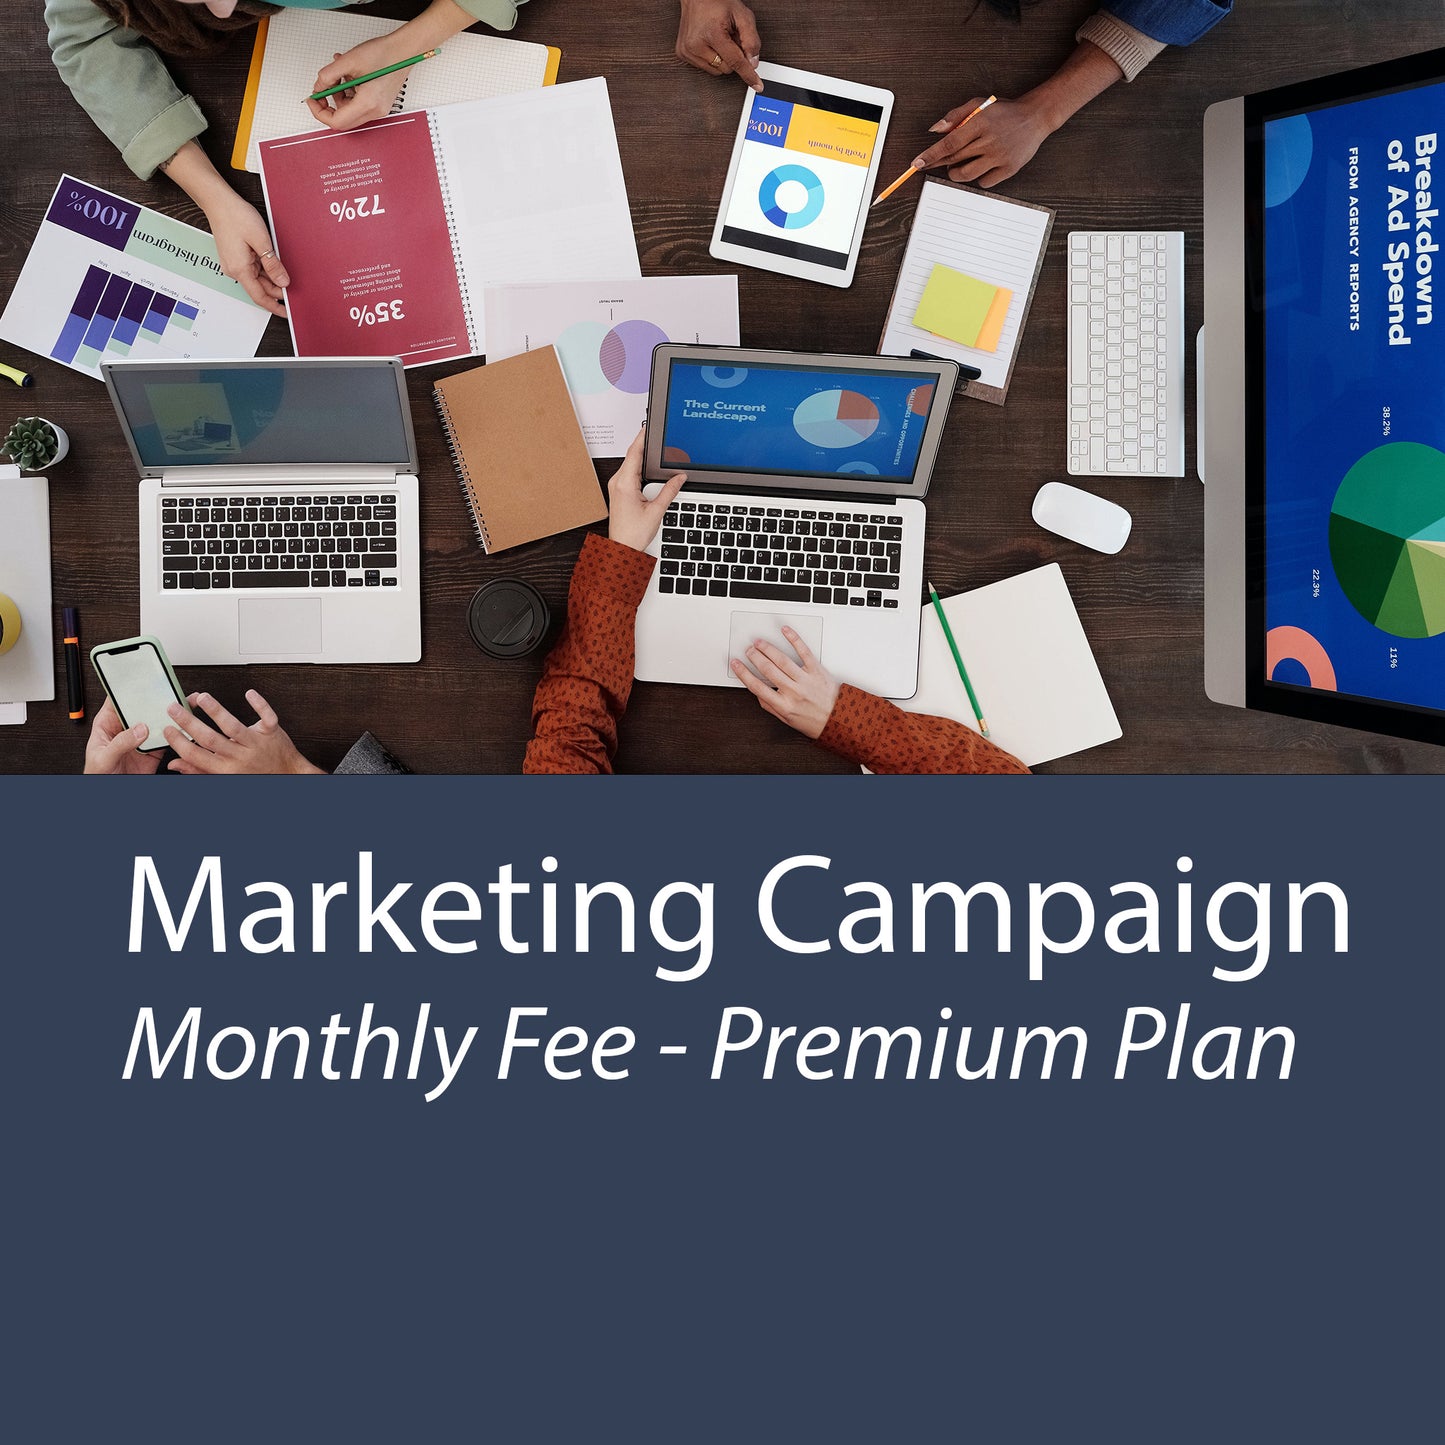 Marketing Campaign Management - Premium